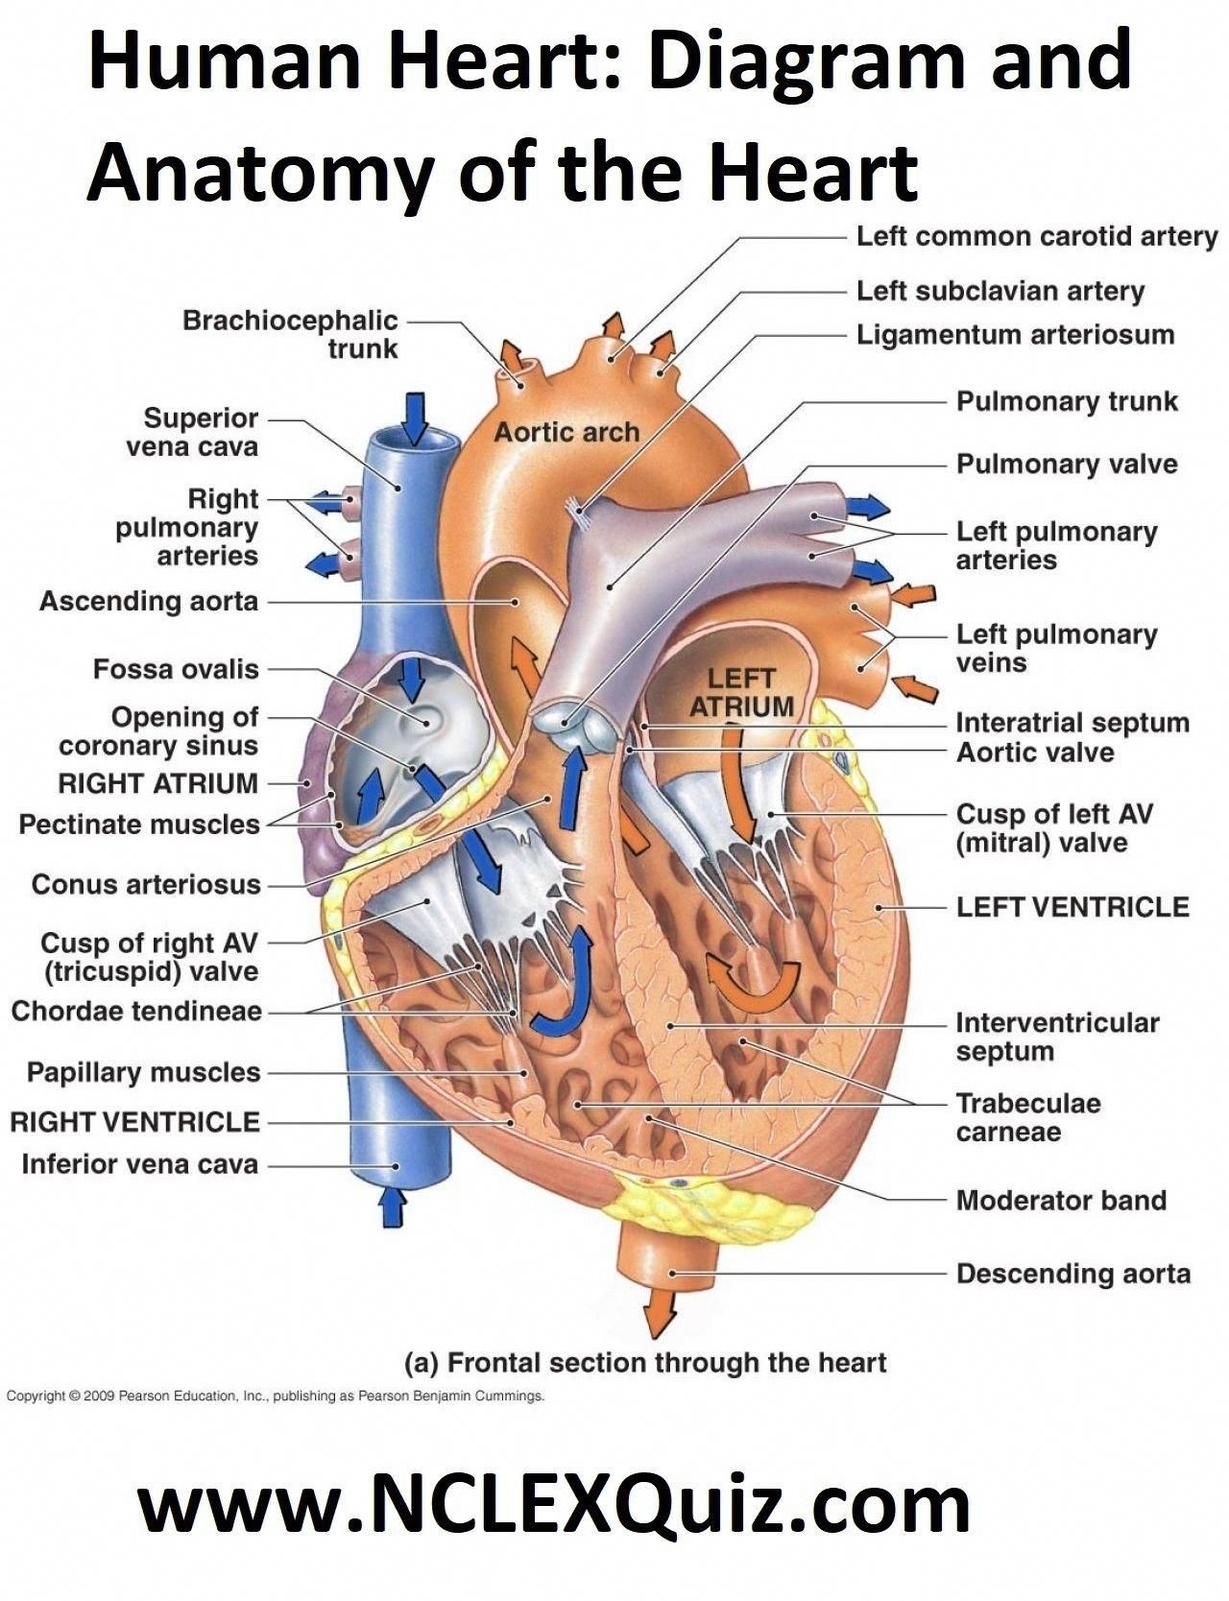 Heart Diagram Coronary Sinus